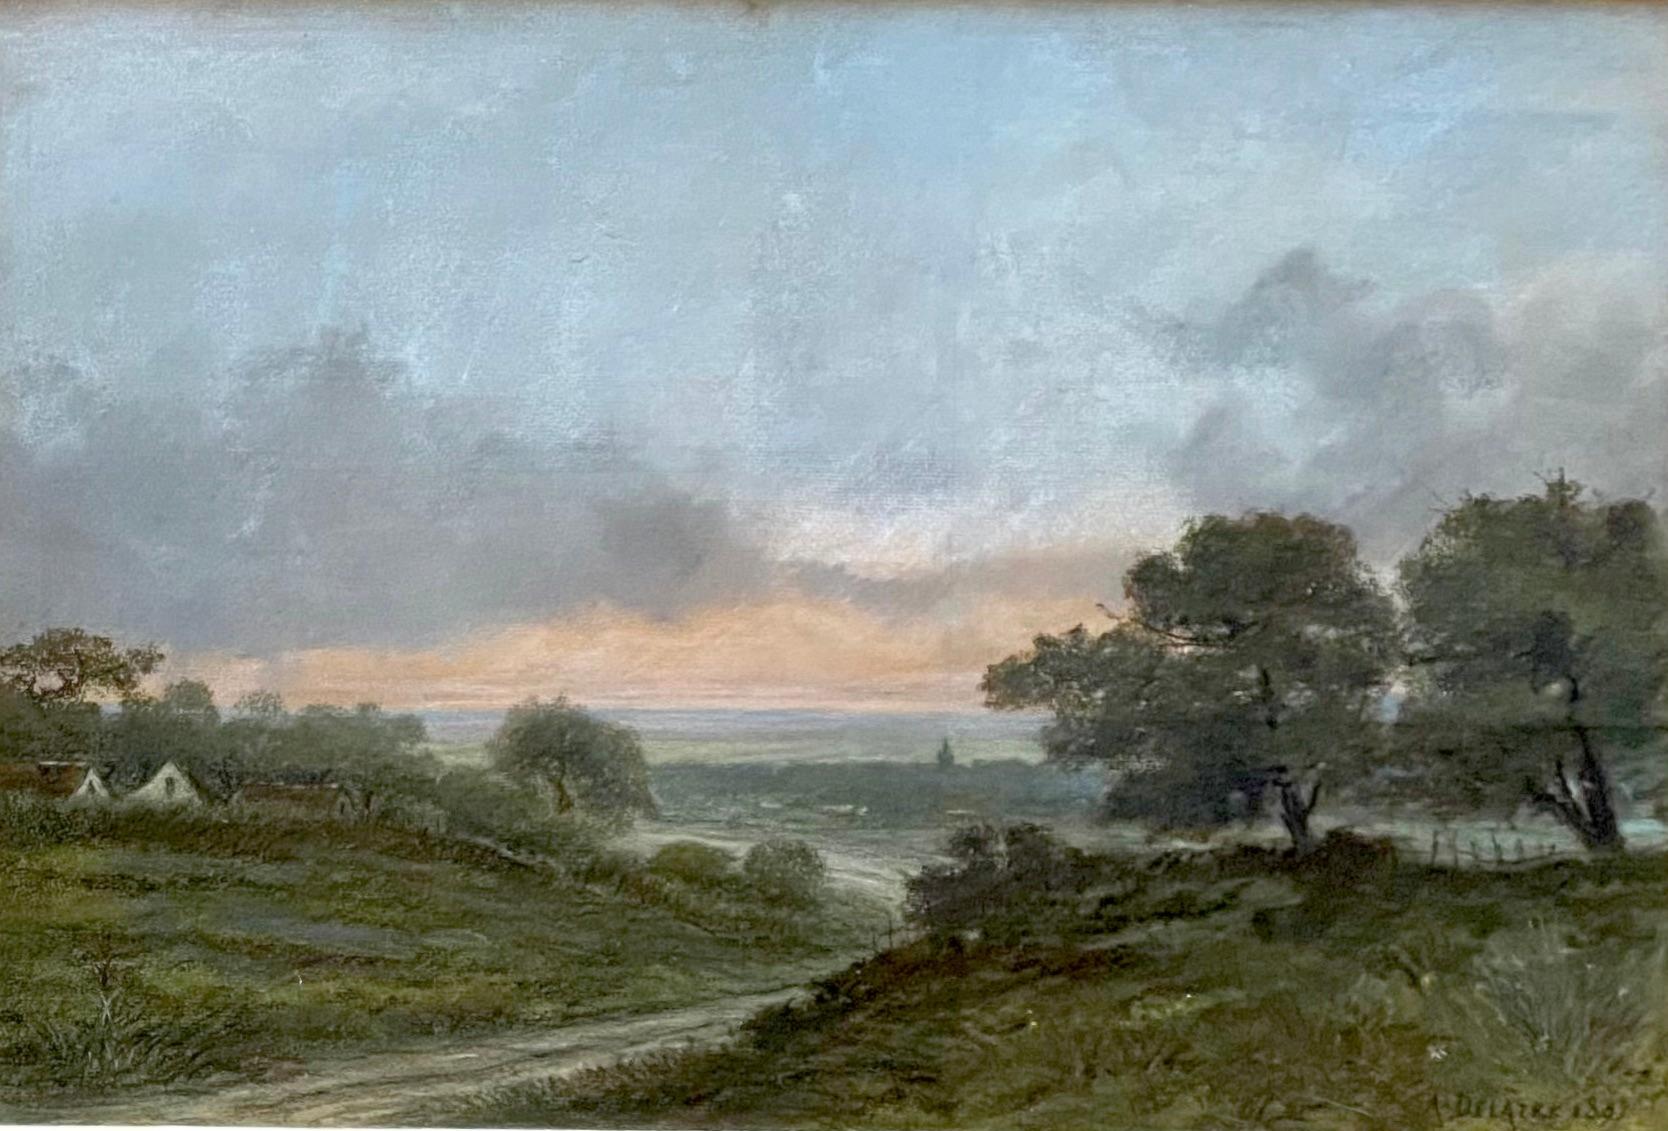 Summer landscape by Whistler's French artist friend Delâtre, Barbizon connection - Art by Auguste Delatre